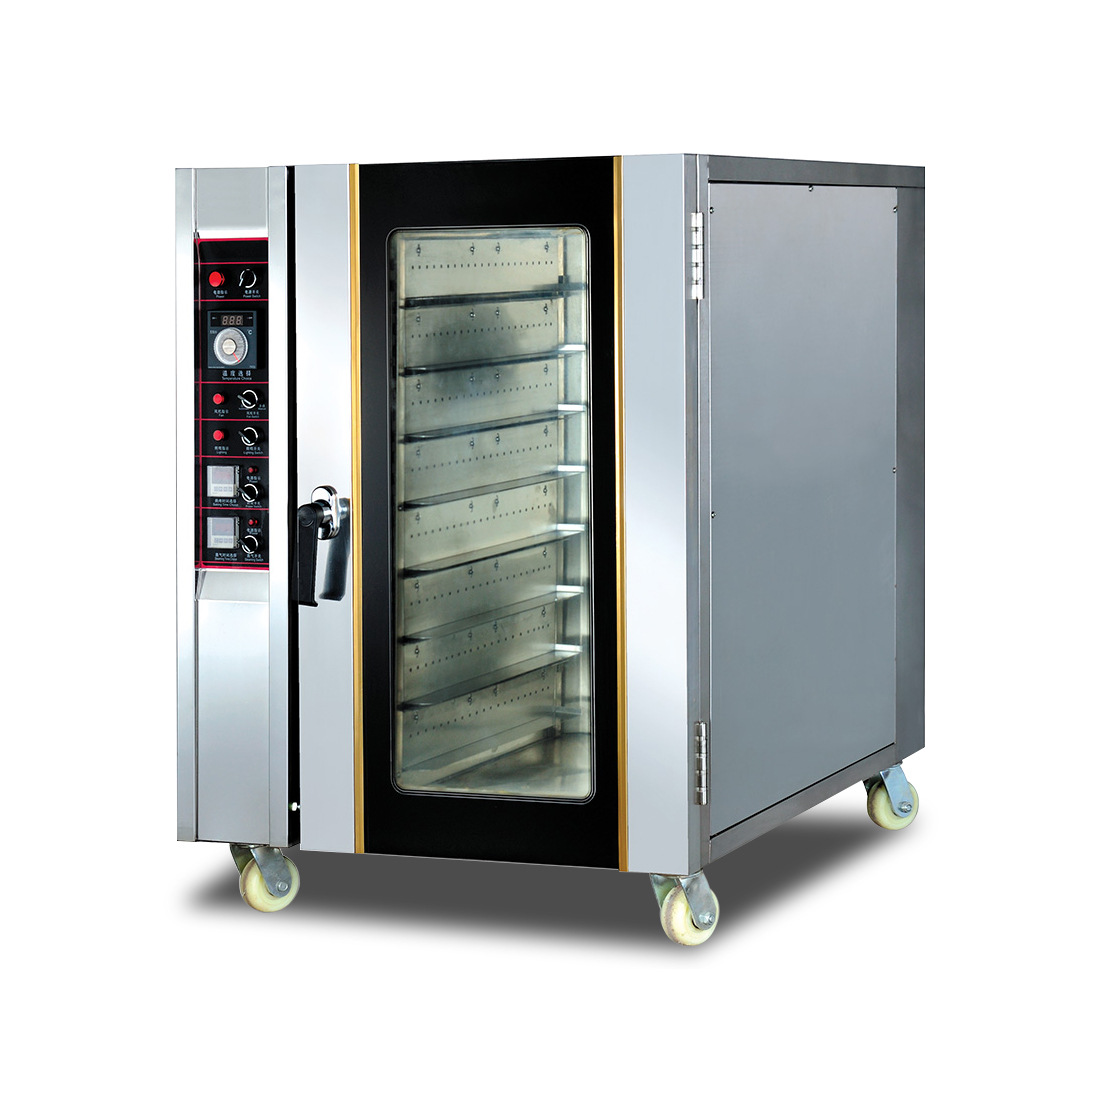 睿美电热风烤箱8盘 风循环电烘炉 面包烤箱电烤炉 商用大型电烤箱